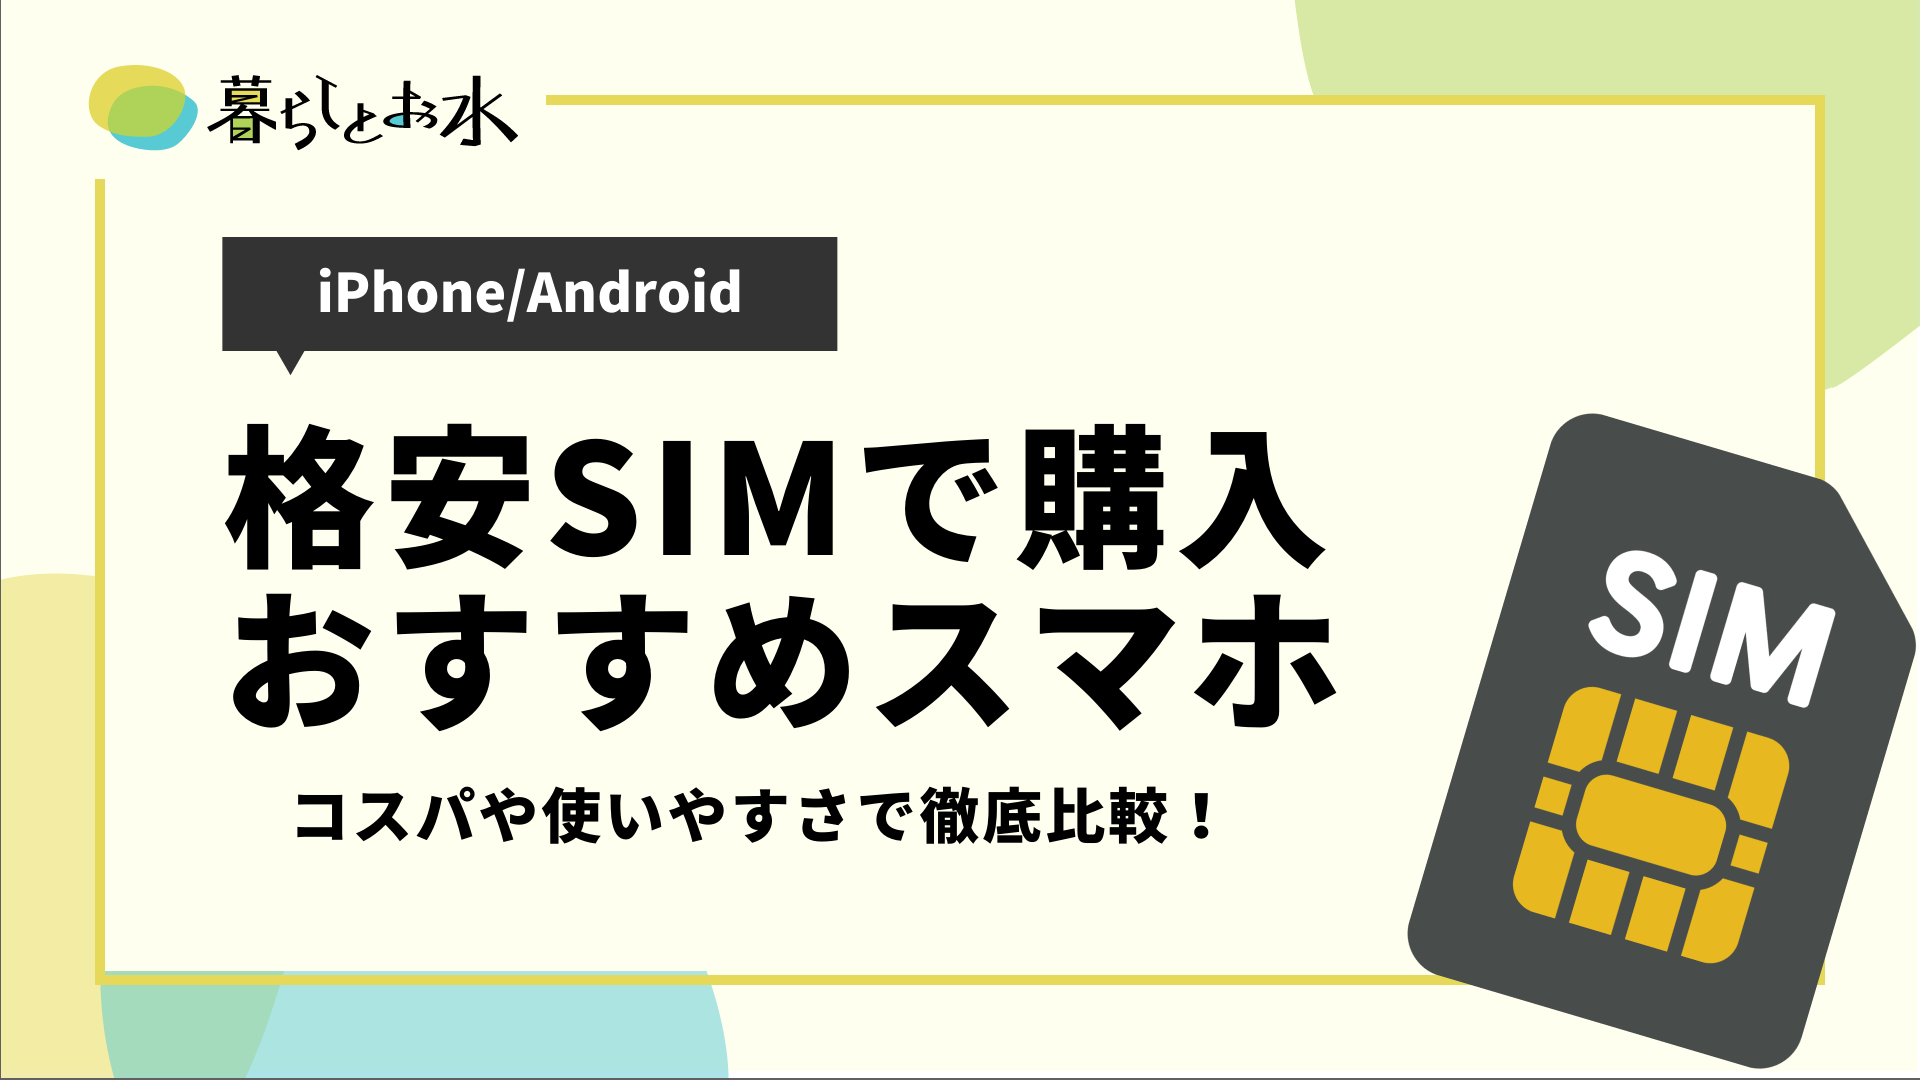 22年最新 格安simで購入できるおすすめのスマホ9選解説 Iphone Android 暮らしとお水